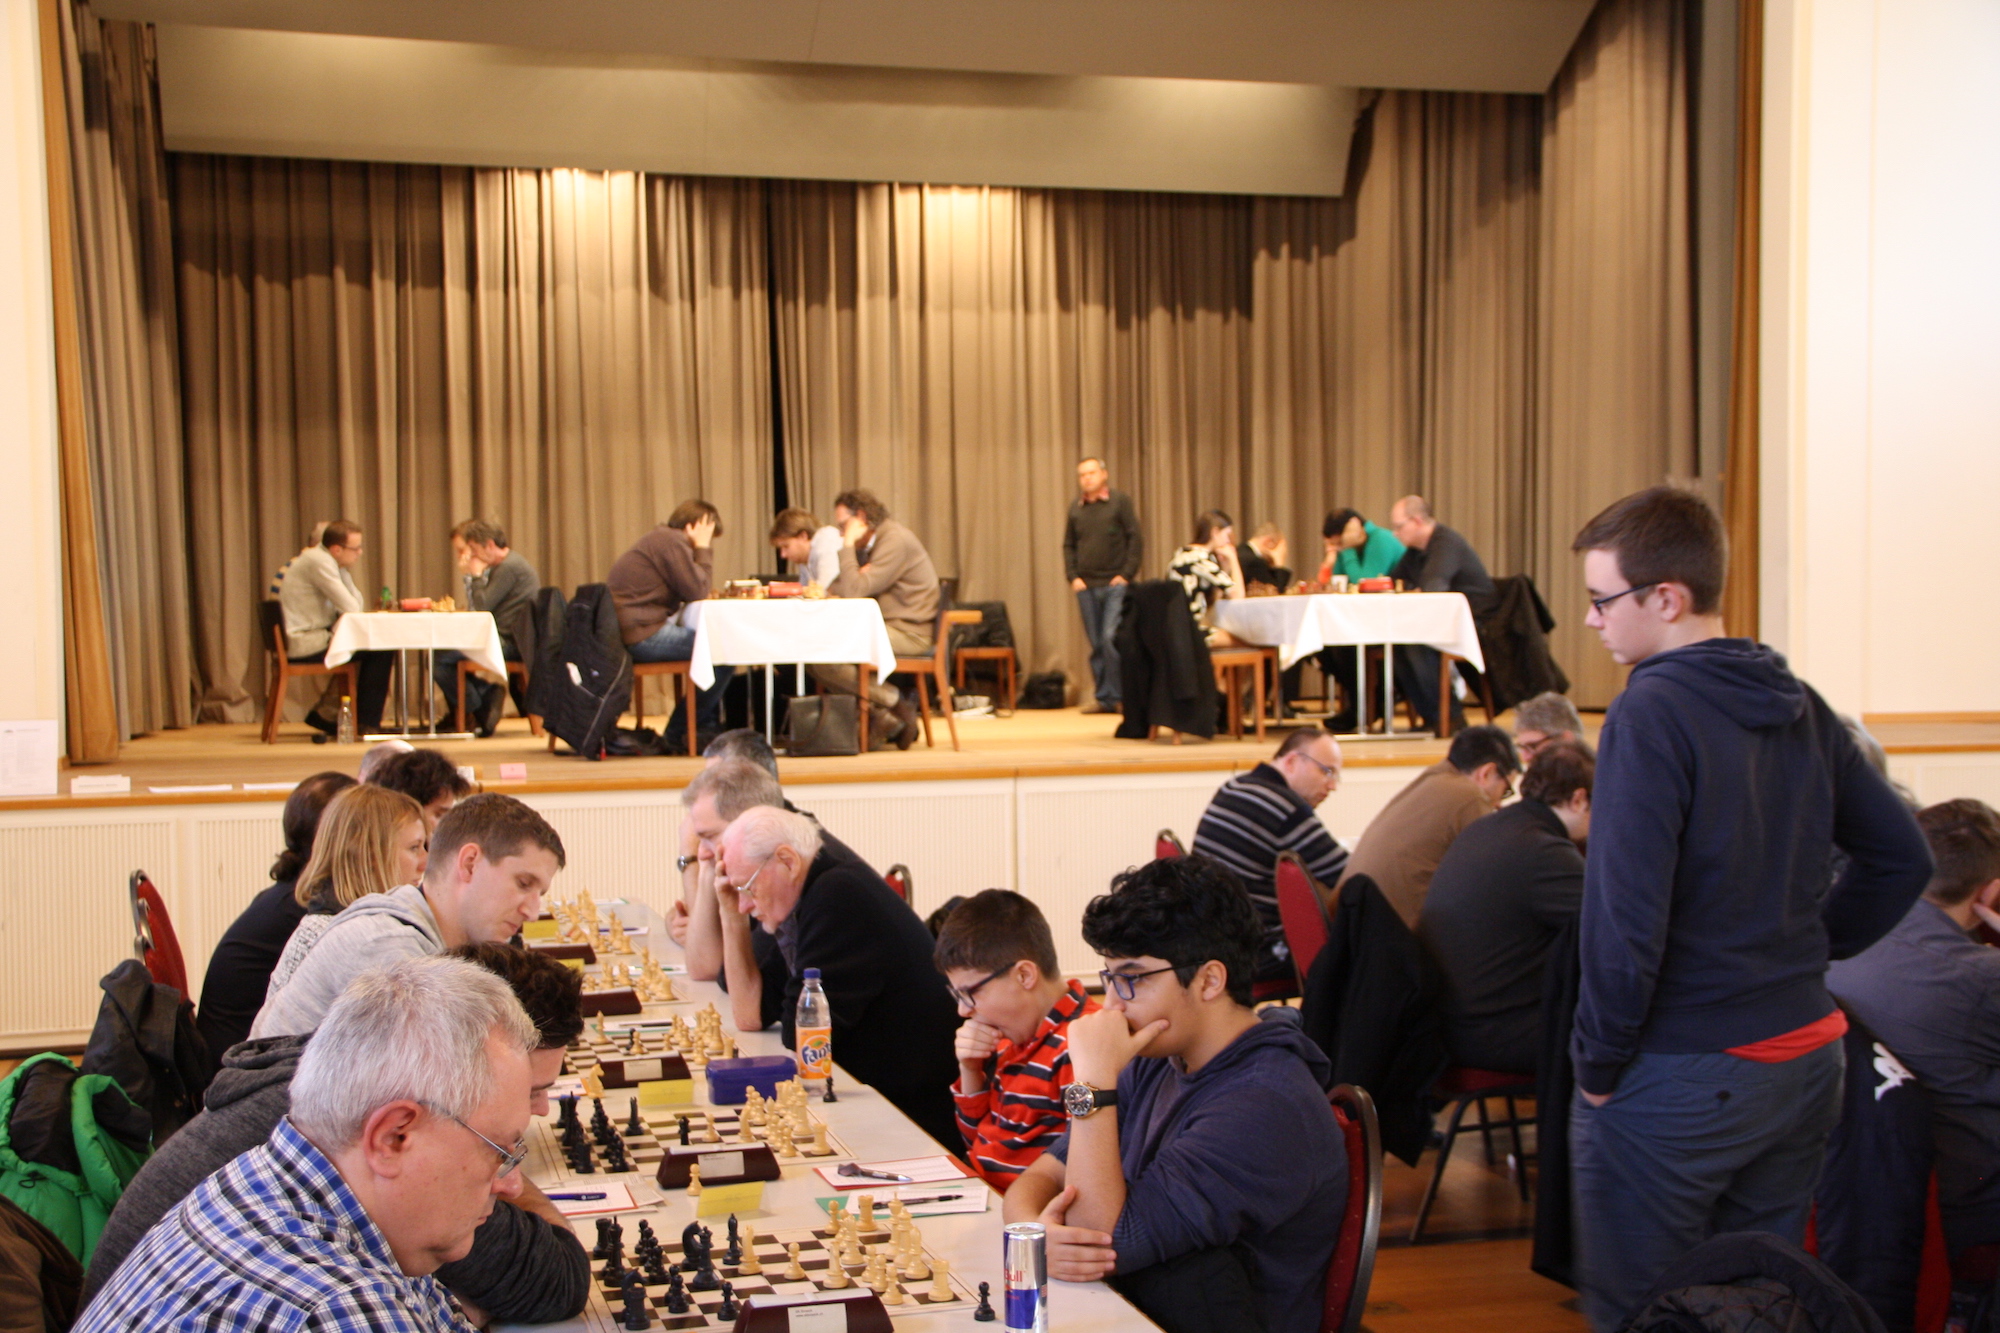 Das Basler Schachfestival im neuen Domizil im Landgasthof Riehen.